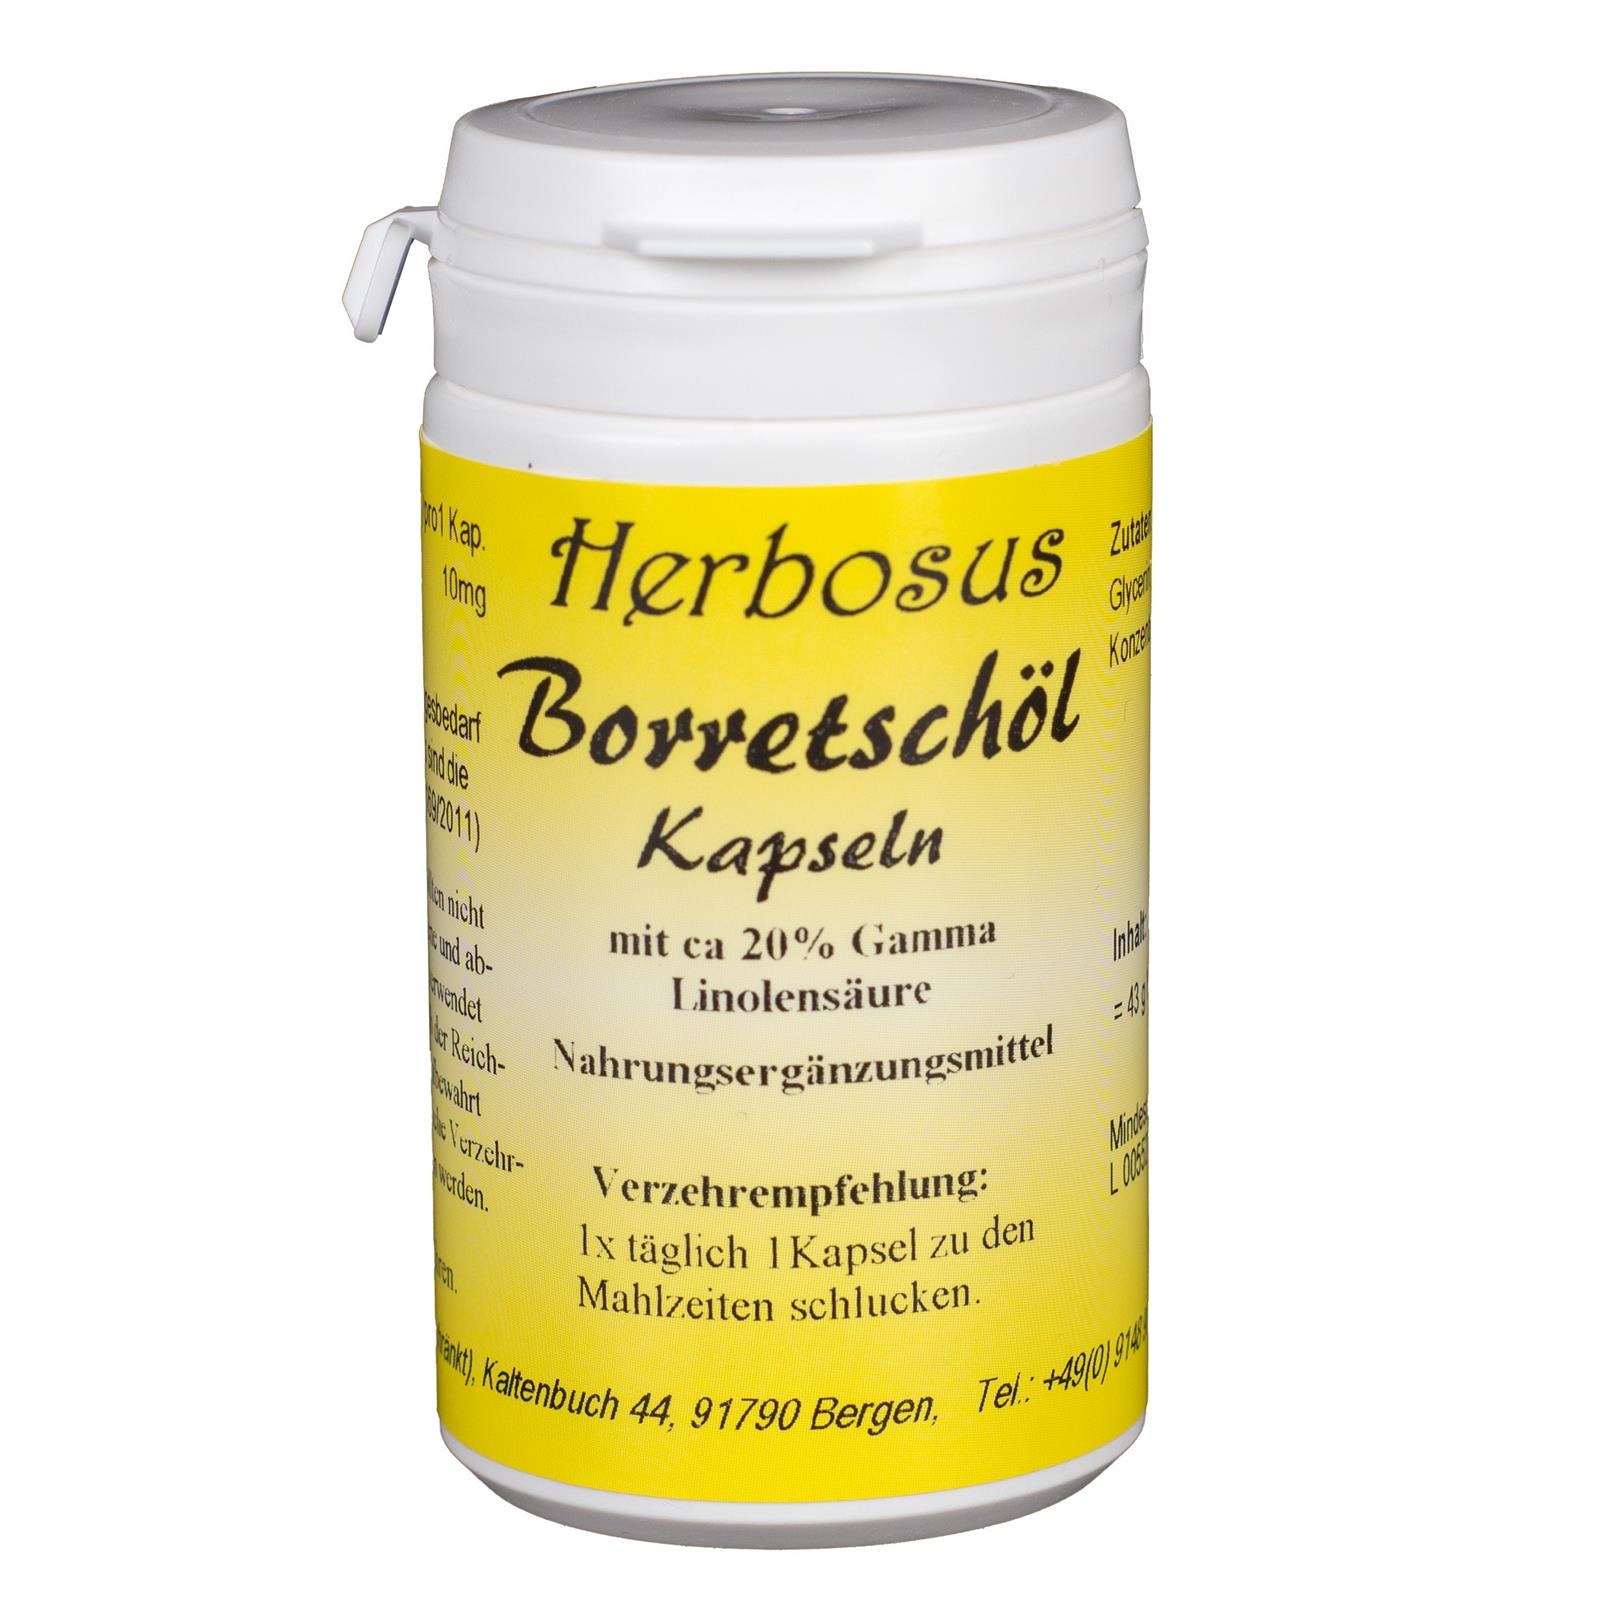 Borretschöl Kapseln von Herbosus